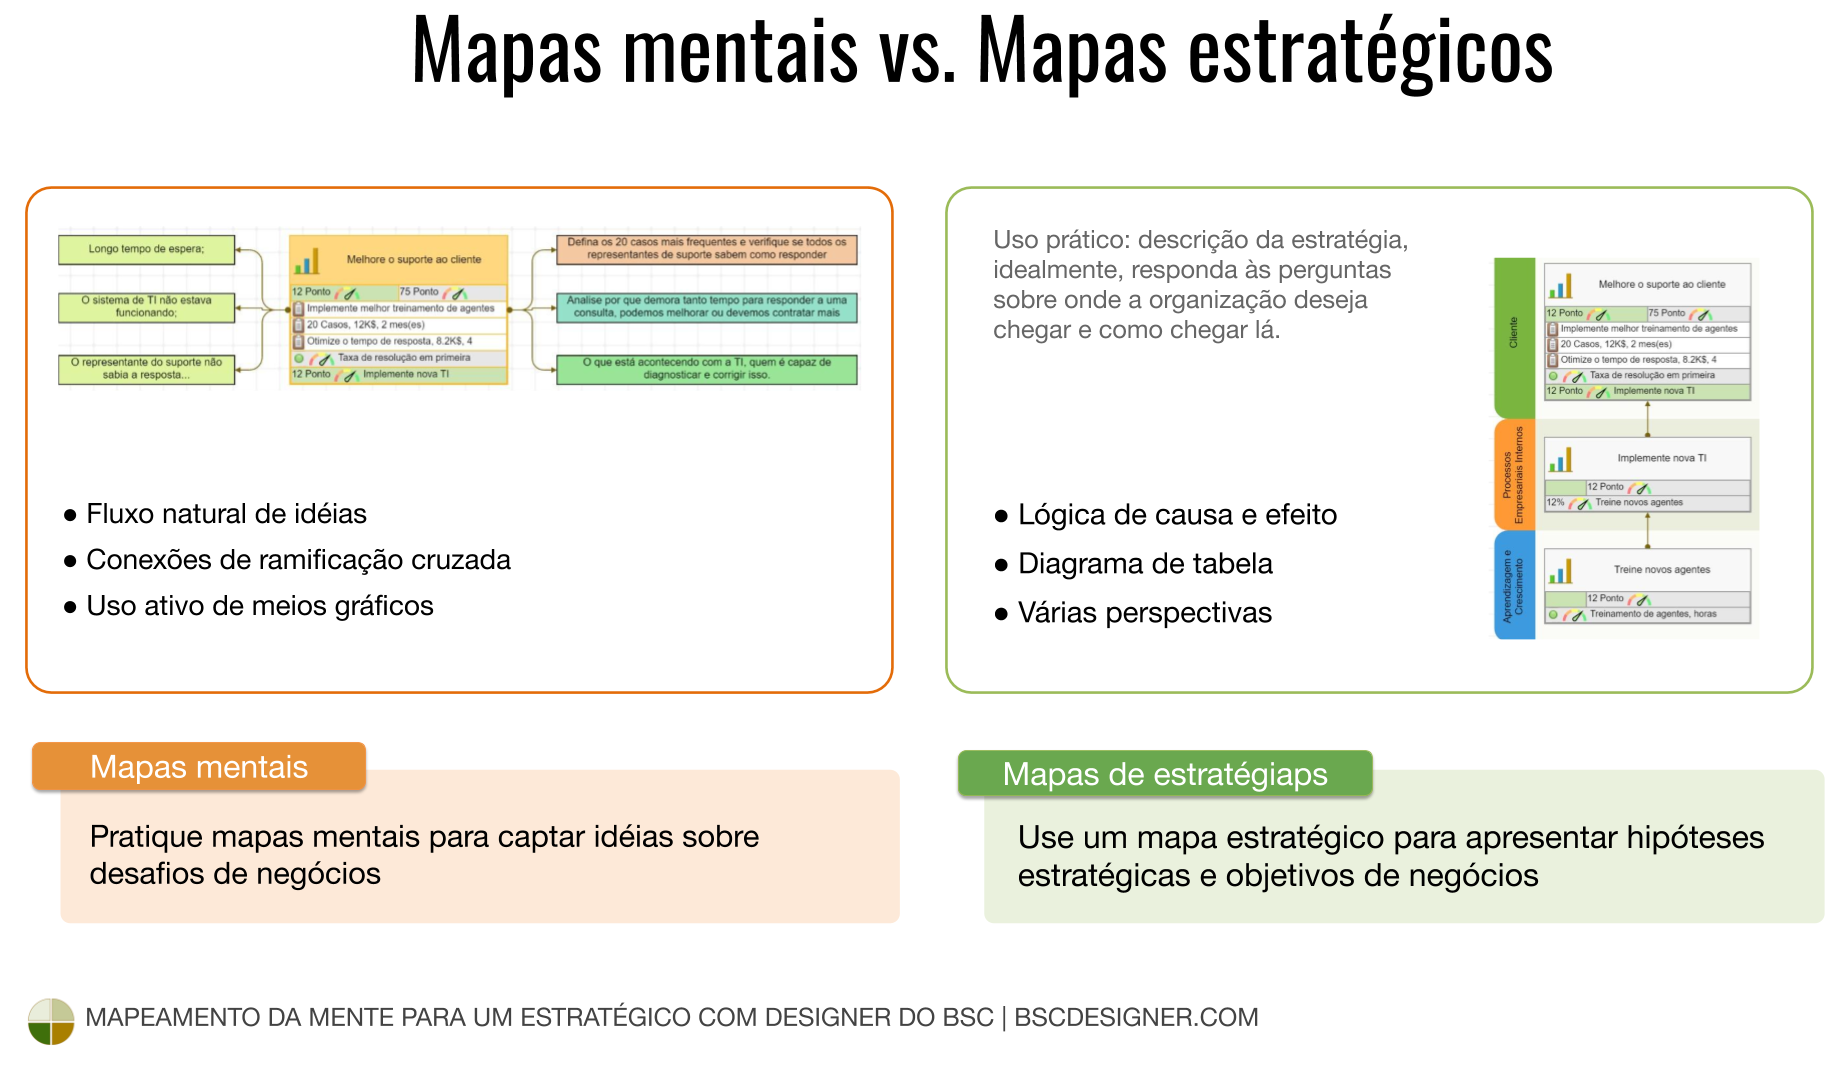 Capture idéias aleatórias com o mapa mental e apresente objetivos de negócios com lógica de causa e efeito em um mapa estratégico.